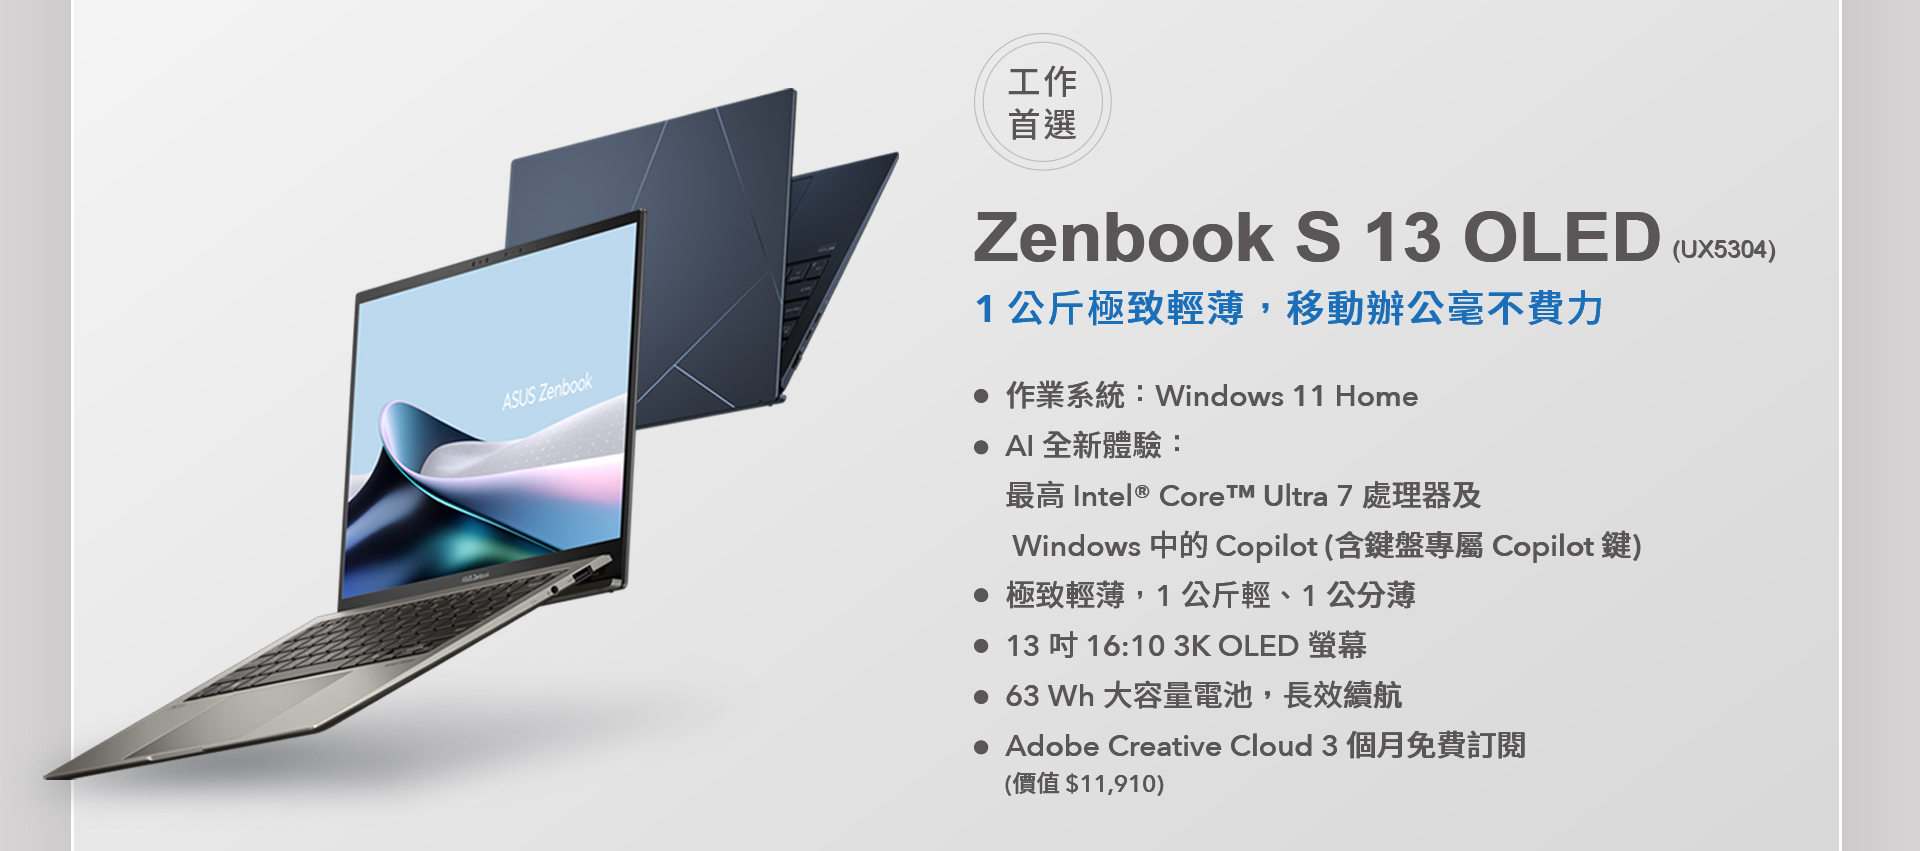 AI 工作首選 ASUS Zenbook S 13 OLED， 1 公斤極致輕薄，移動辦公毫不費力。最高搭載 Intel® Core™ Ultra 7 處理器及 Windows 中的 Copilot，釋放 AI 全新體驗，含鍵盤專屬 Copilot 鍵。